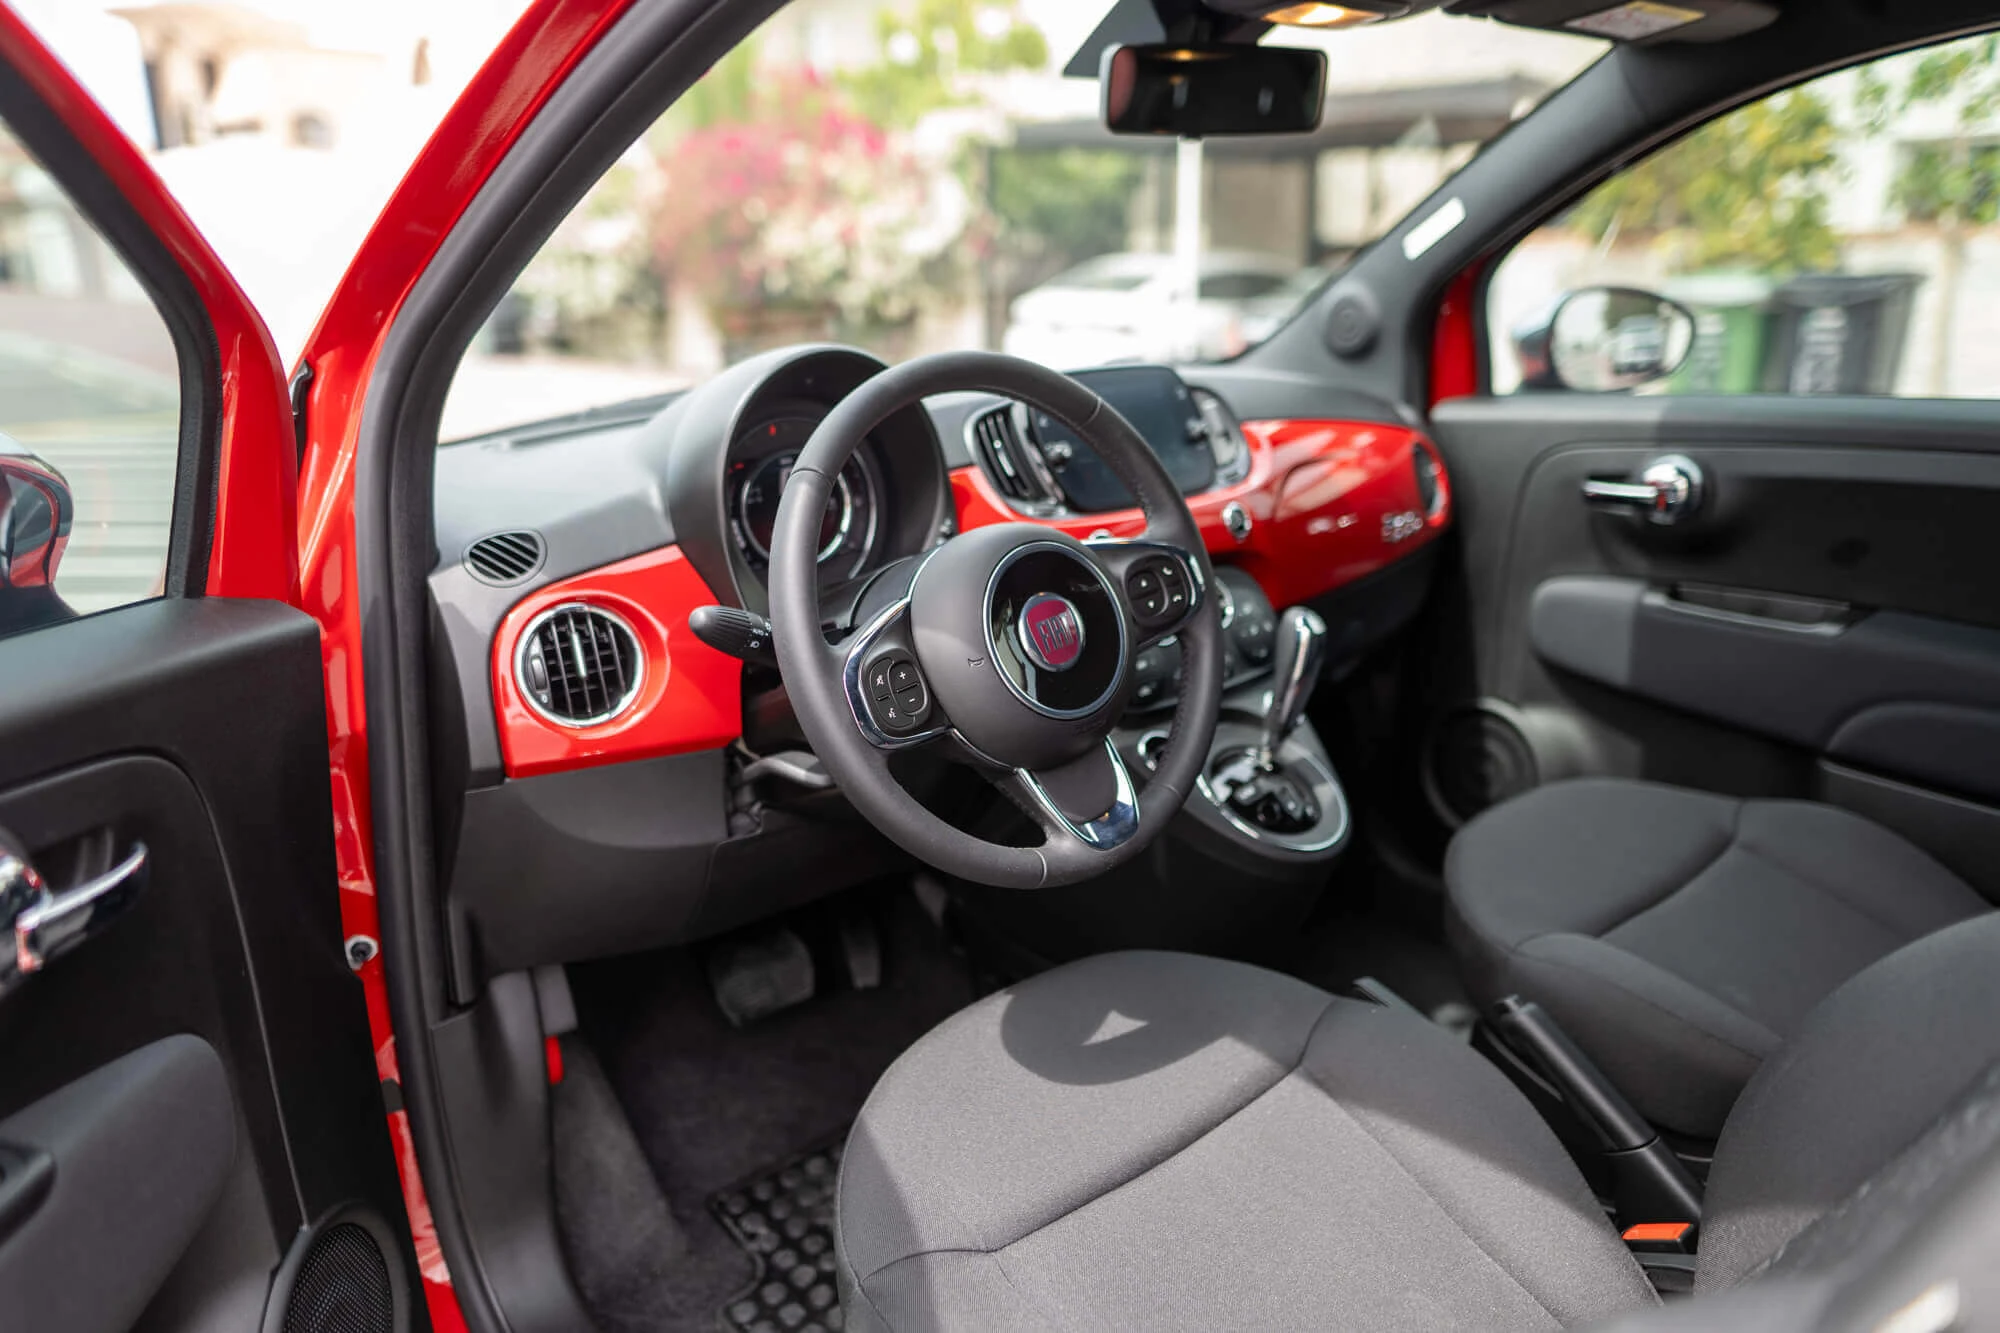 Fiat 500 Cabrio Rojo